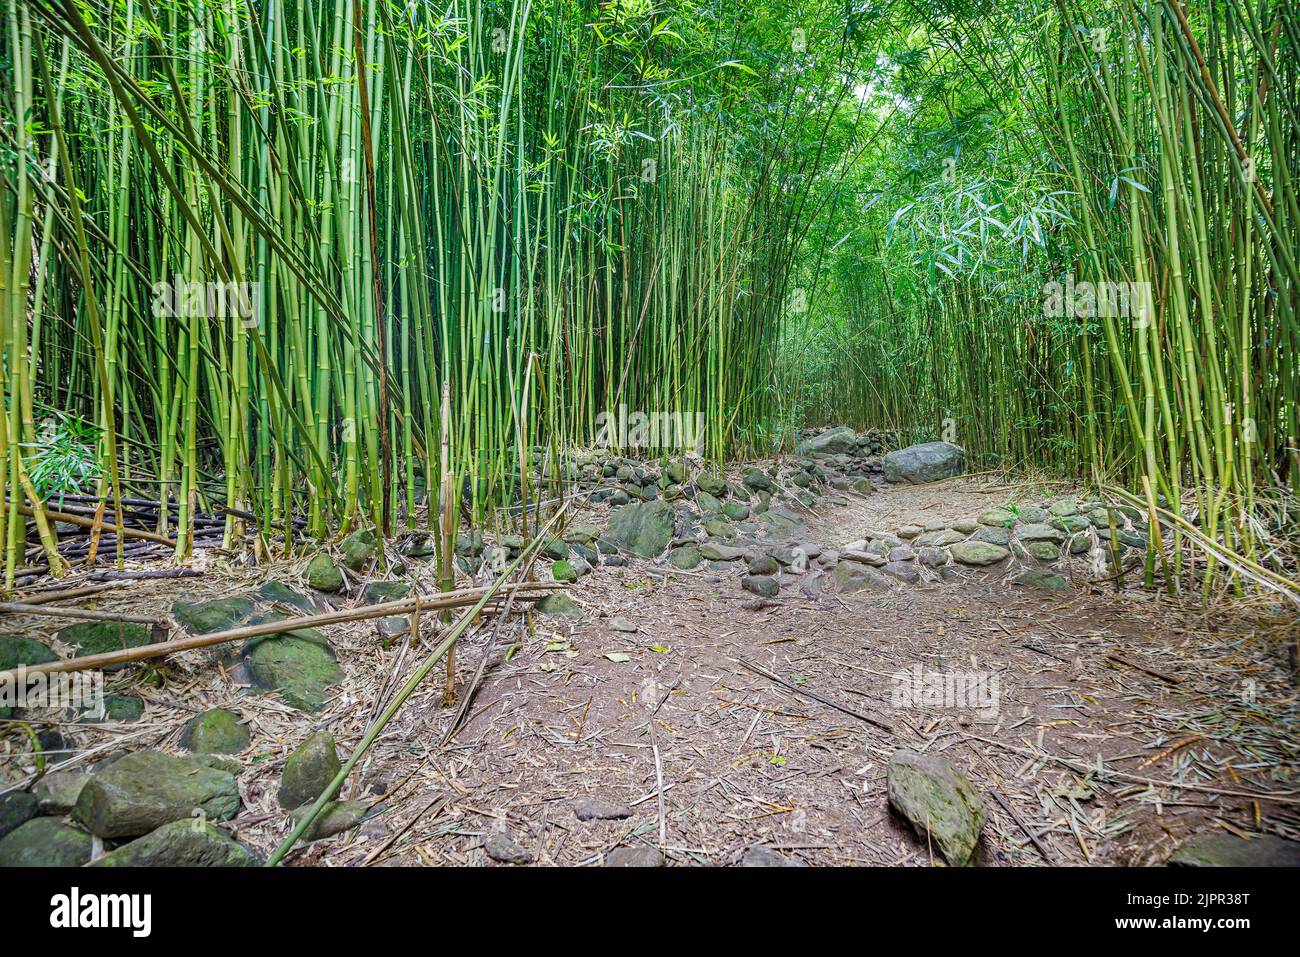 Este bosque de bambú ha crecido alrededor de las paredes de un antiguo pueblo hawaiano en las montañas del oeste de Maui, Hawai. Foto de stock